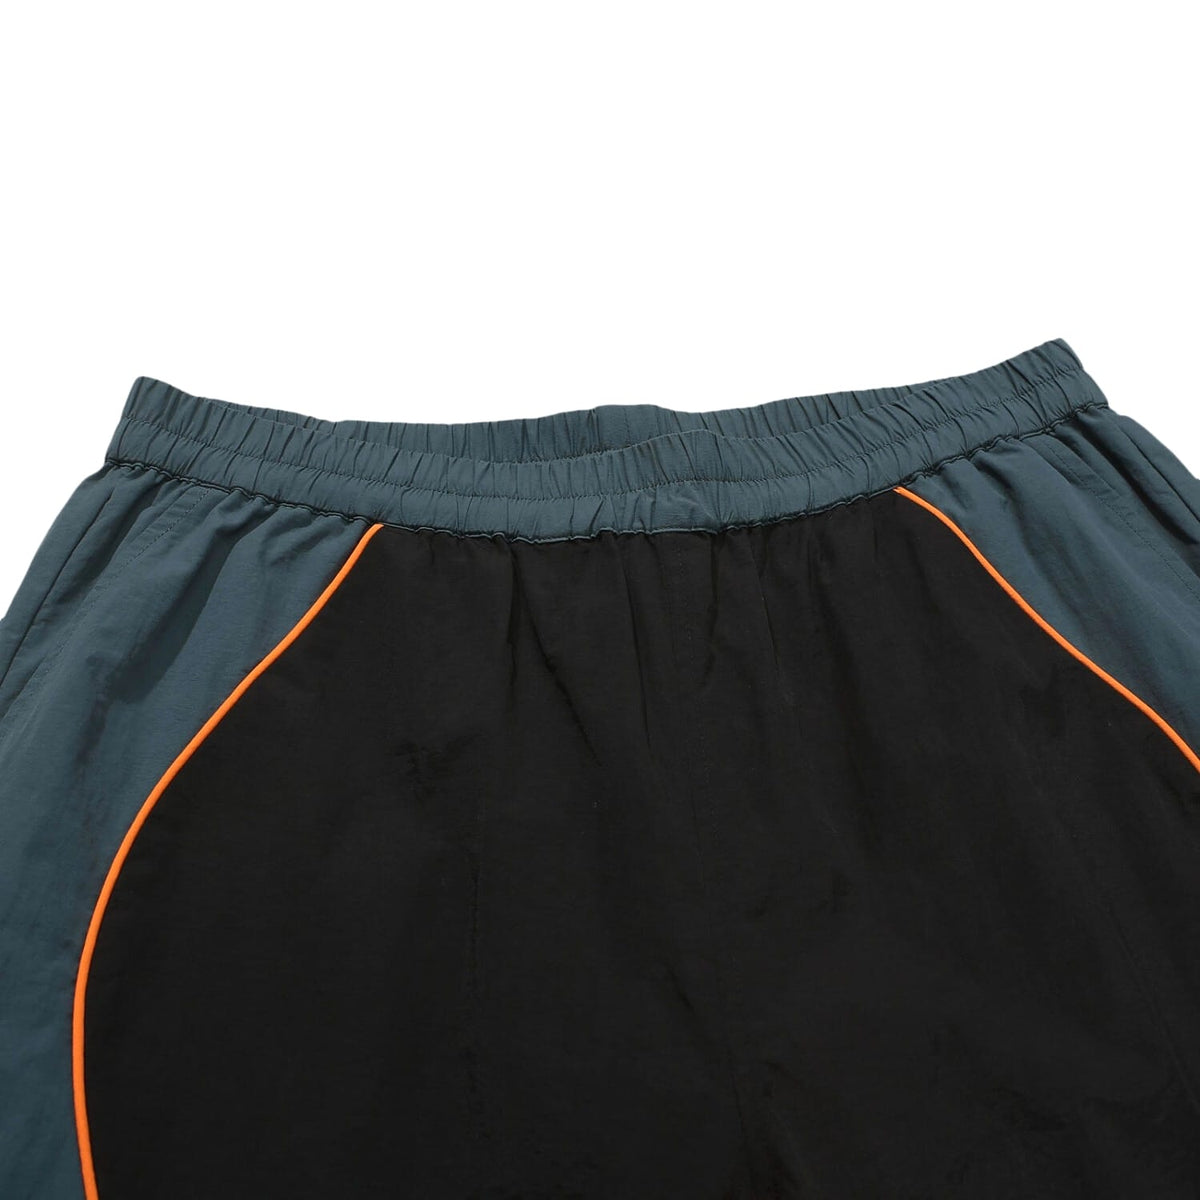 Helas Lime Sport Shorts - Black - Mens Gym Shorts by Helas